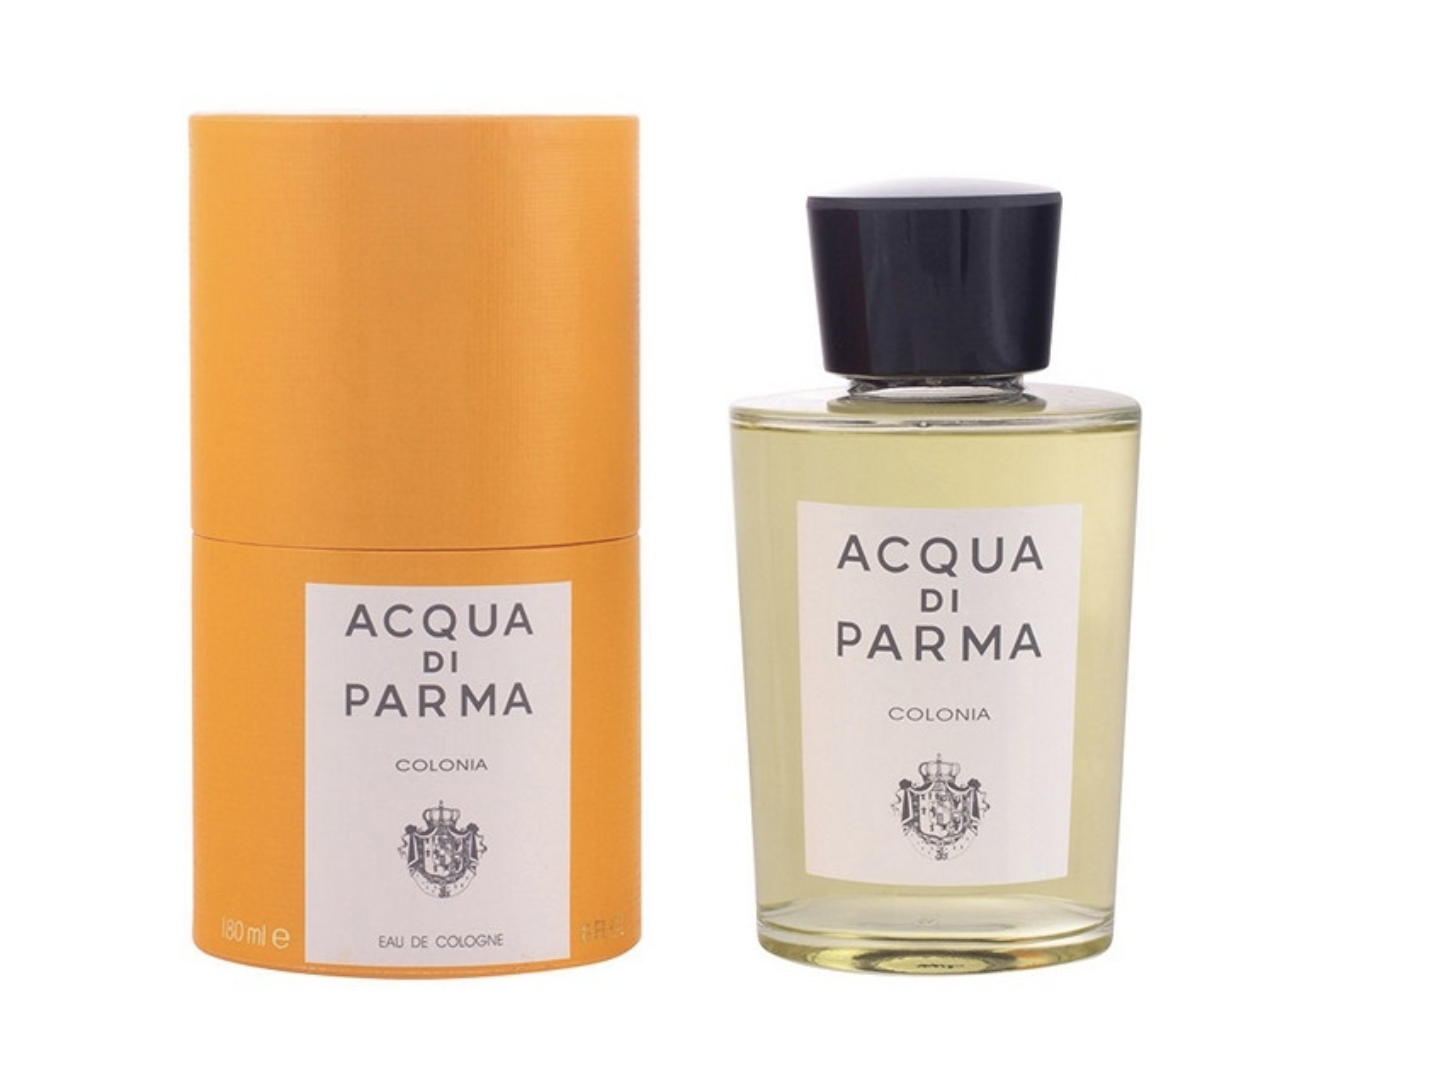 Perfume Acqua di Parma